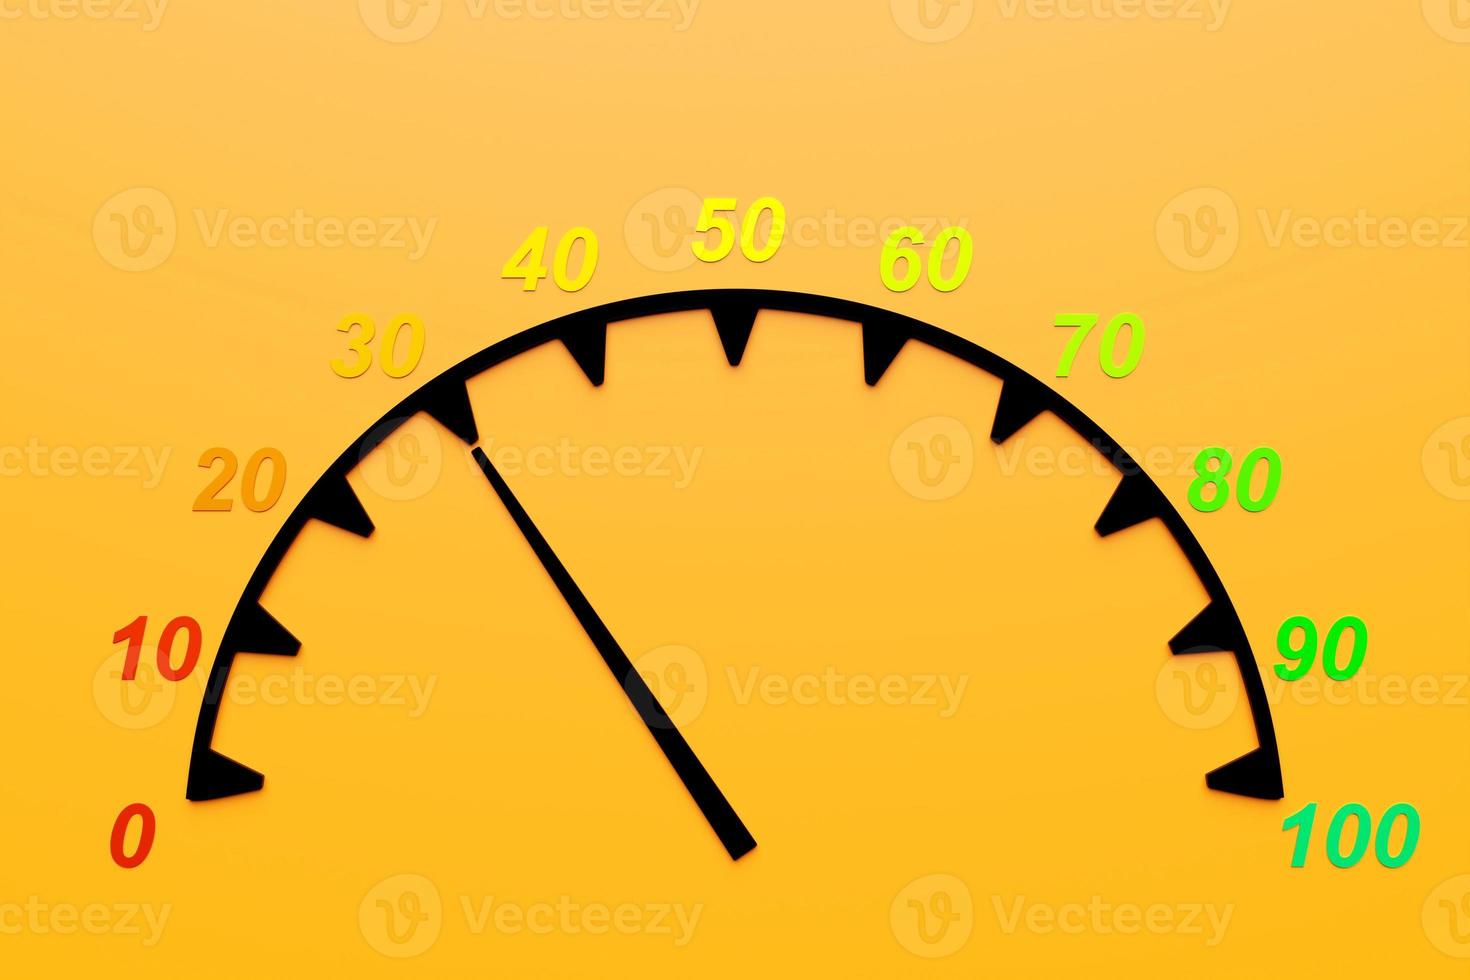 3d illustratie van snelheid die snelheidspictogram meten. kleurrijk snelheidsmeterpictogram, snelheidsmeteraanwijzer wijst naar 40 foto